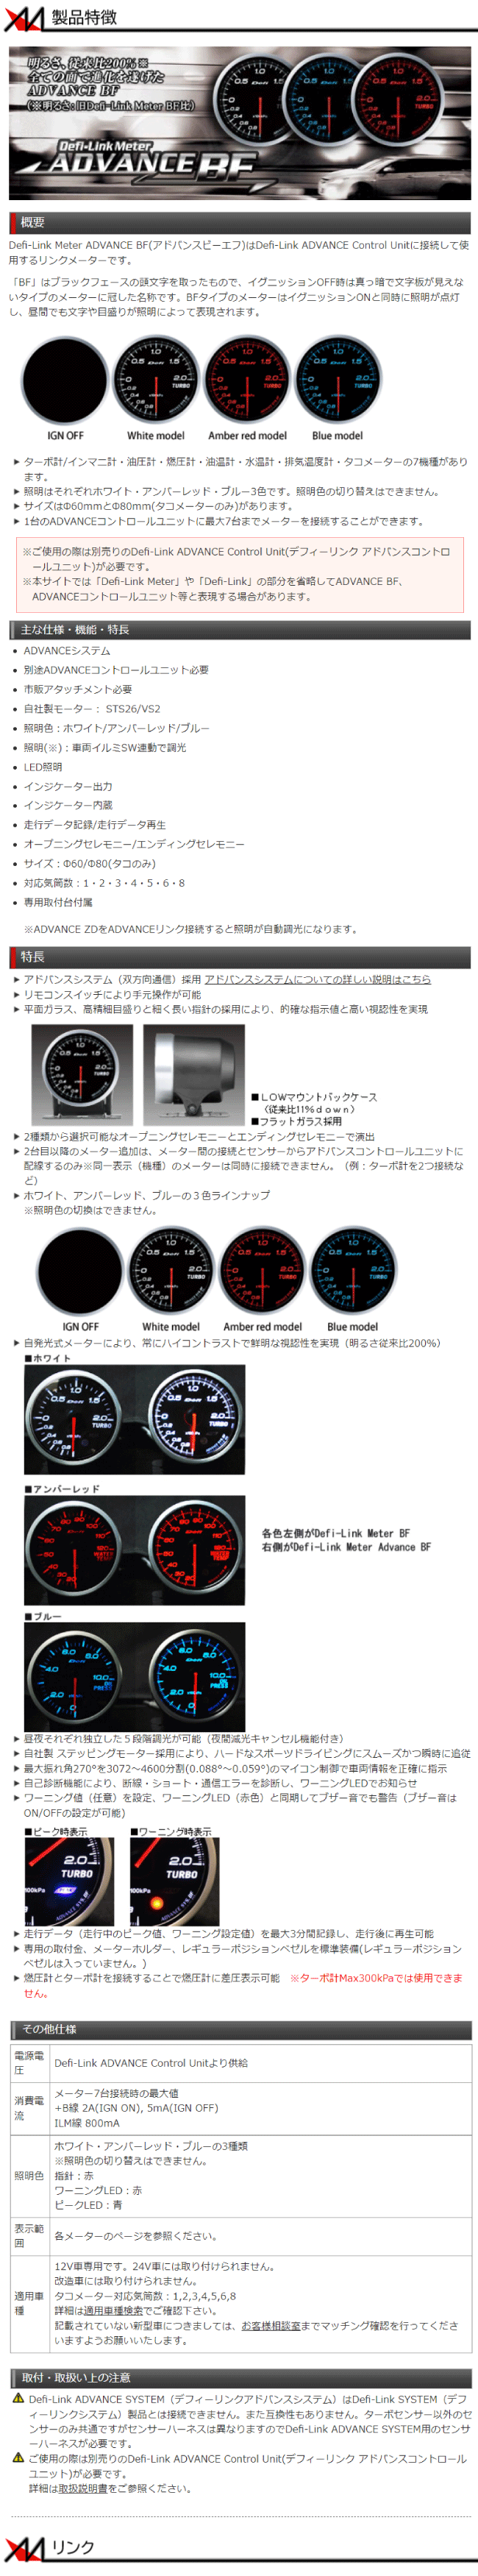 BMW メーターのディスプレイデザイン(カラー、フォント、速度メーター表示など) の変更を可能にする製品 コーディング CTC PL3-DSP-B001